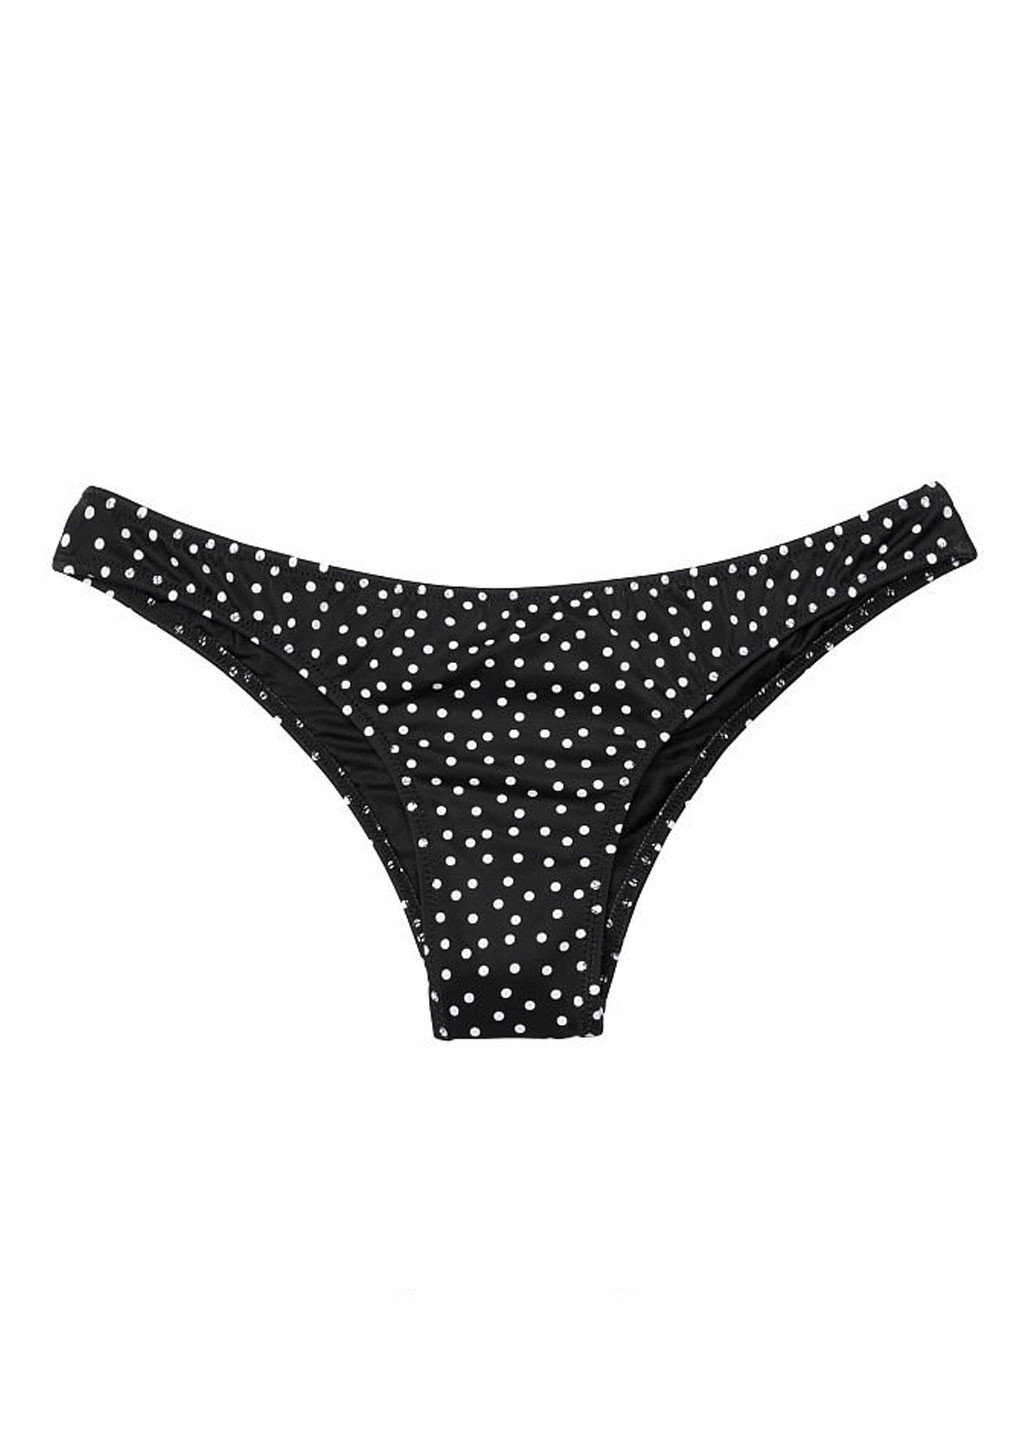 Черно-белый летний купальник (лиф, трусы) бикини, раздельный Victoria's Secret